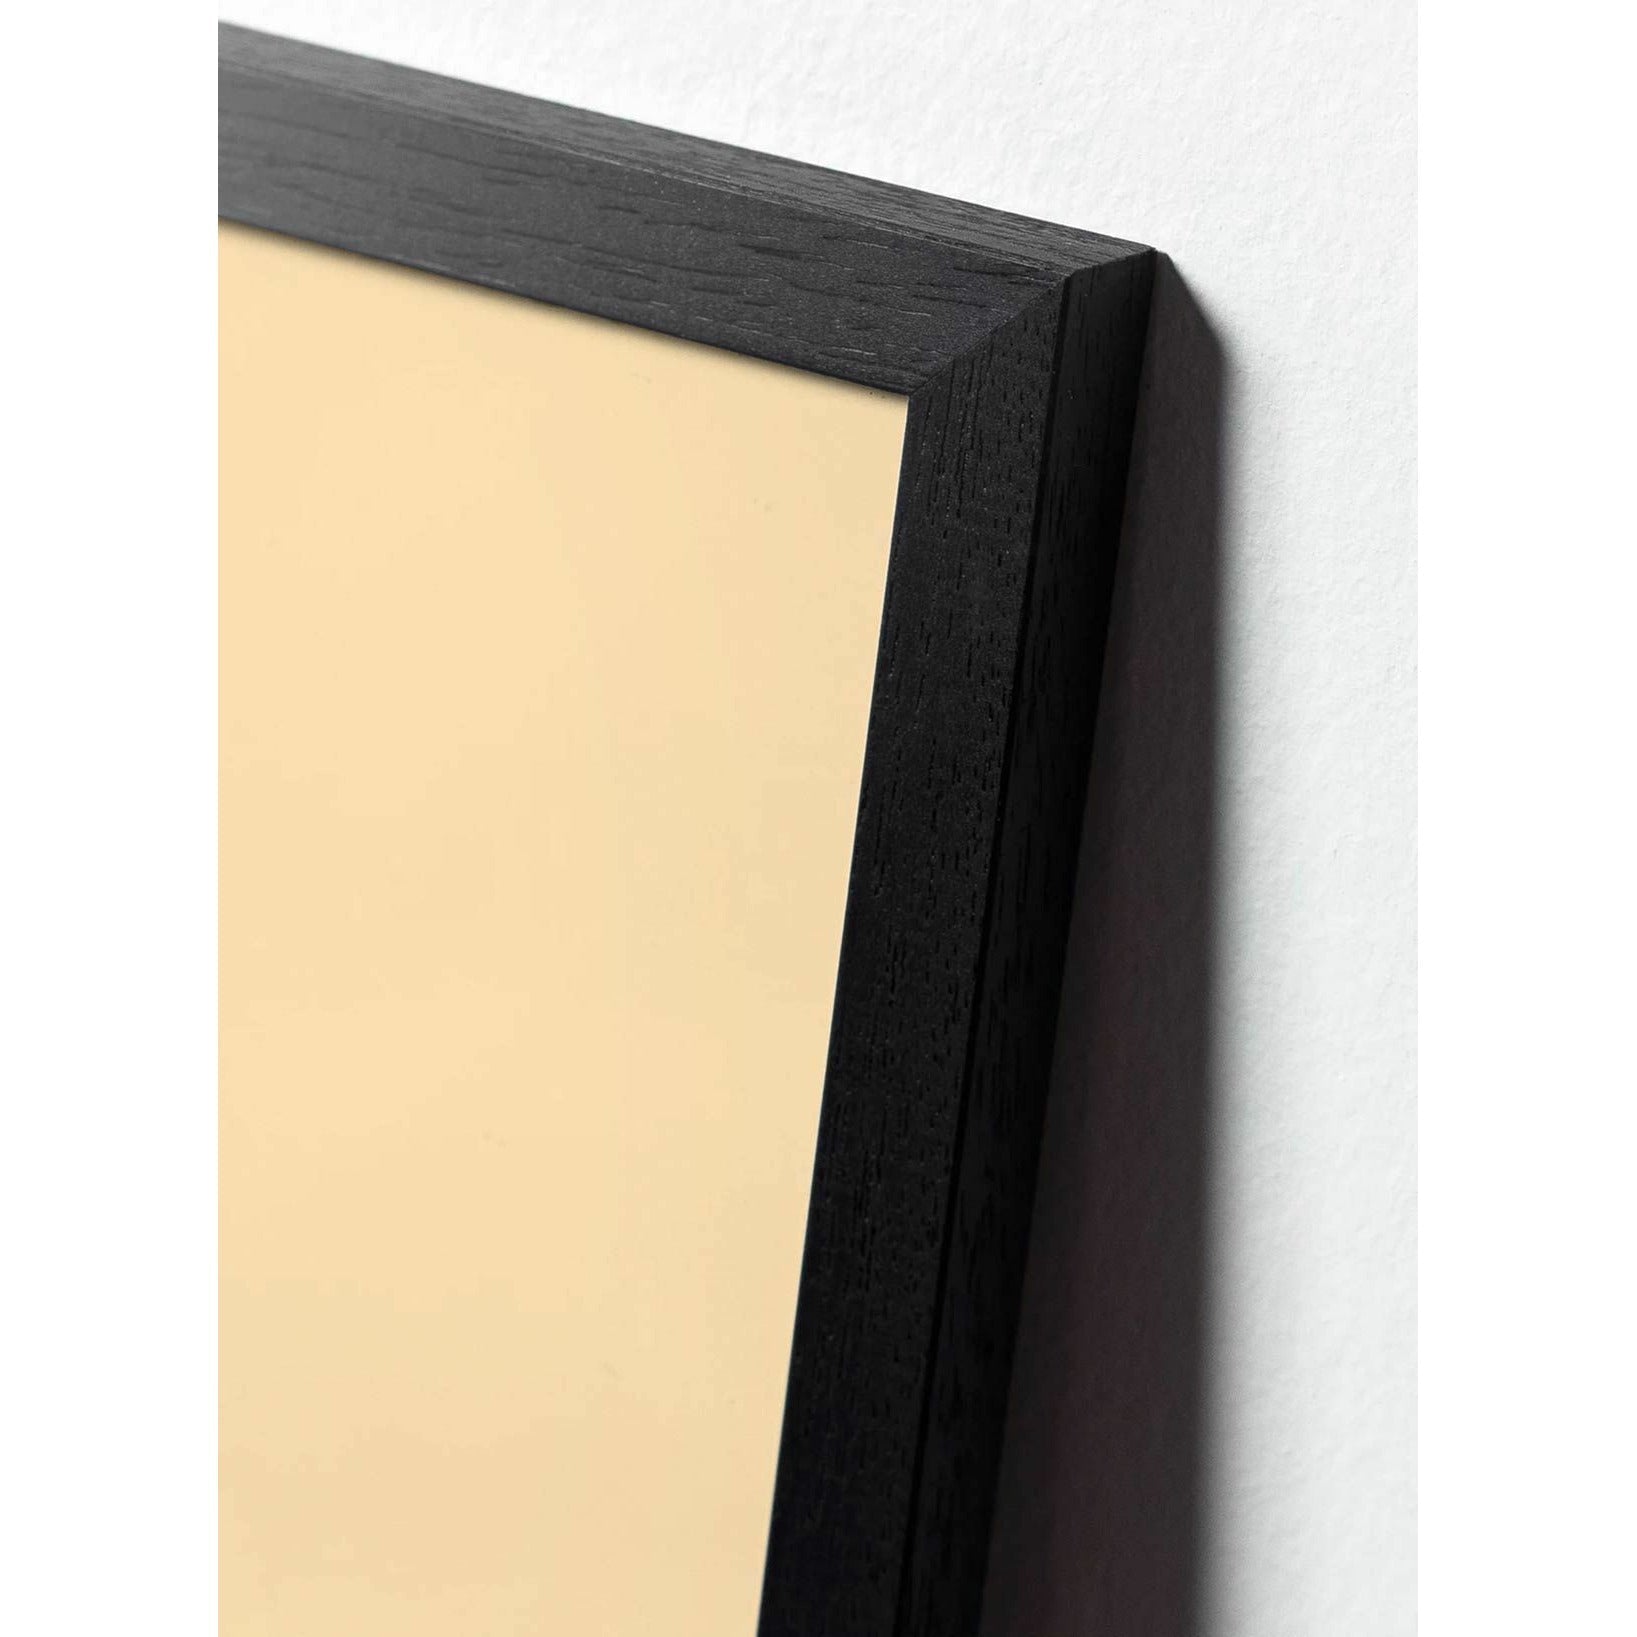 Plakát vejce z mozku, rám v černém lakovaném dřevu 50x70 cm, bílé pozadí